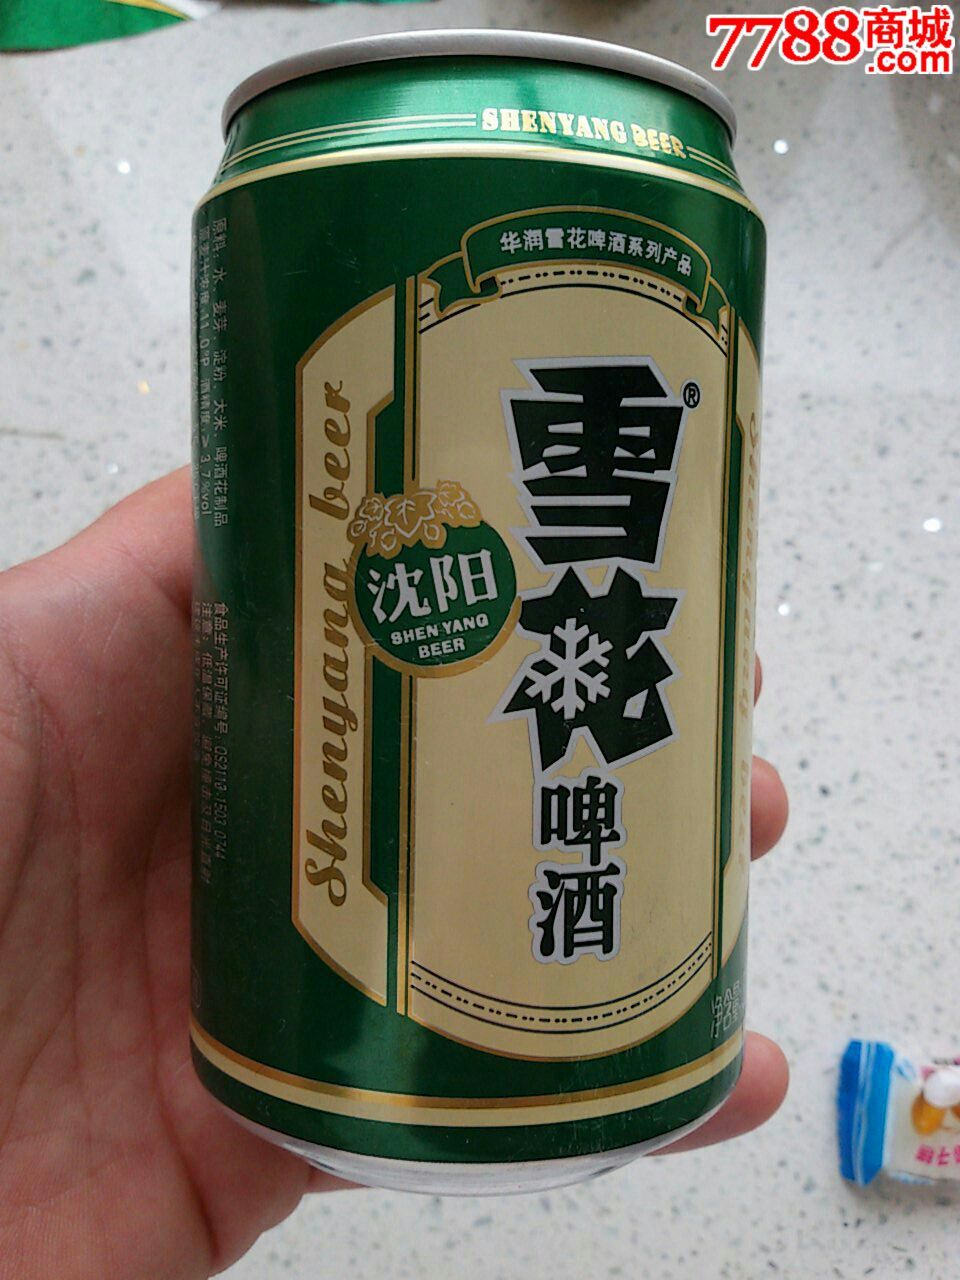 啤酒罐—沈阳啤酒(产地辽宁朝阳市)